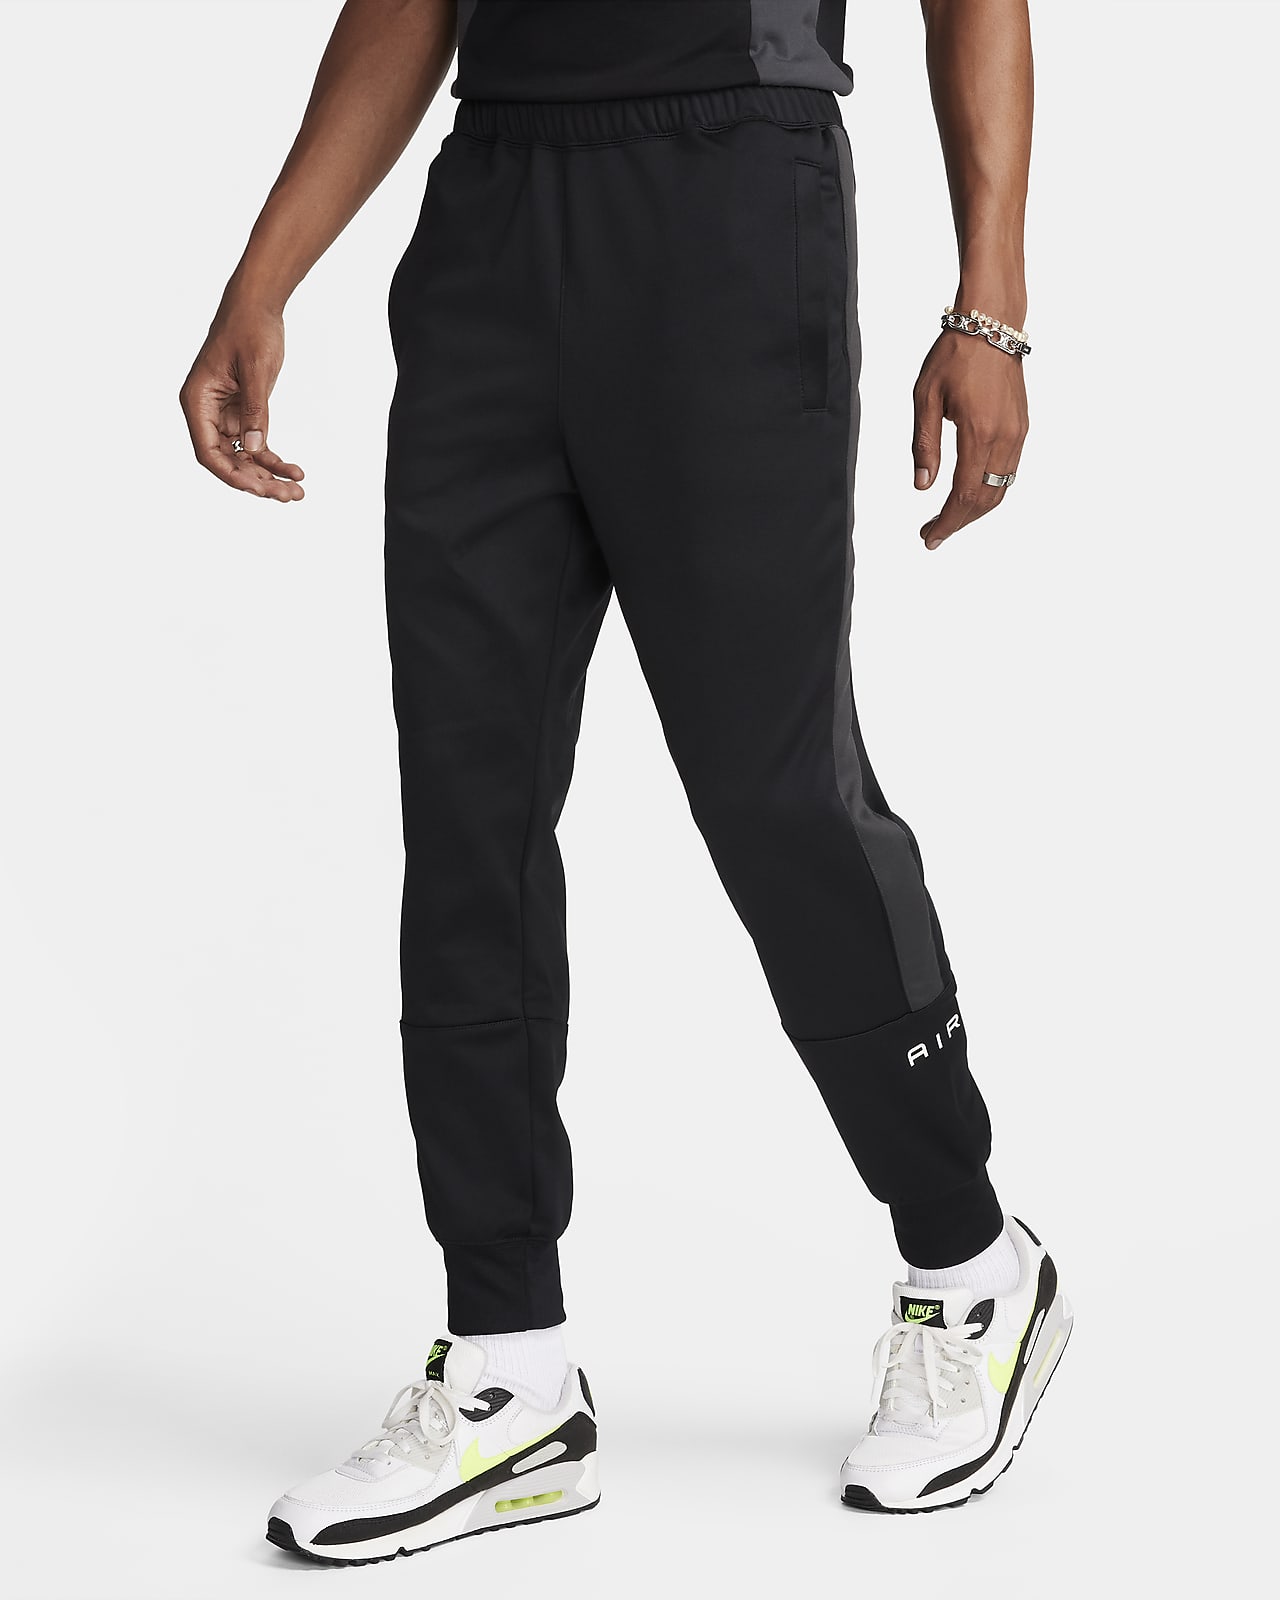 Nike Air Pantalón deportivo - Hombre